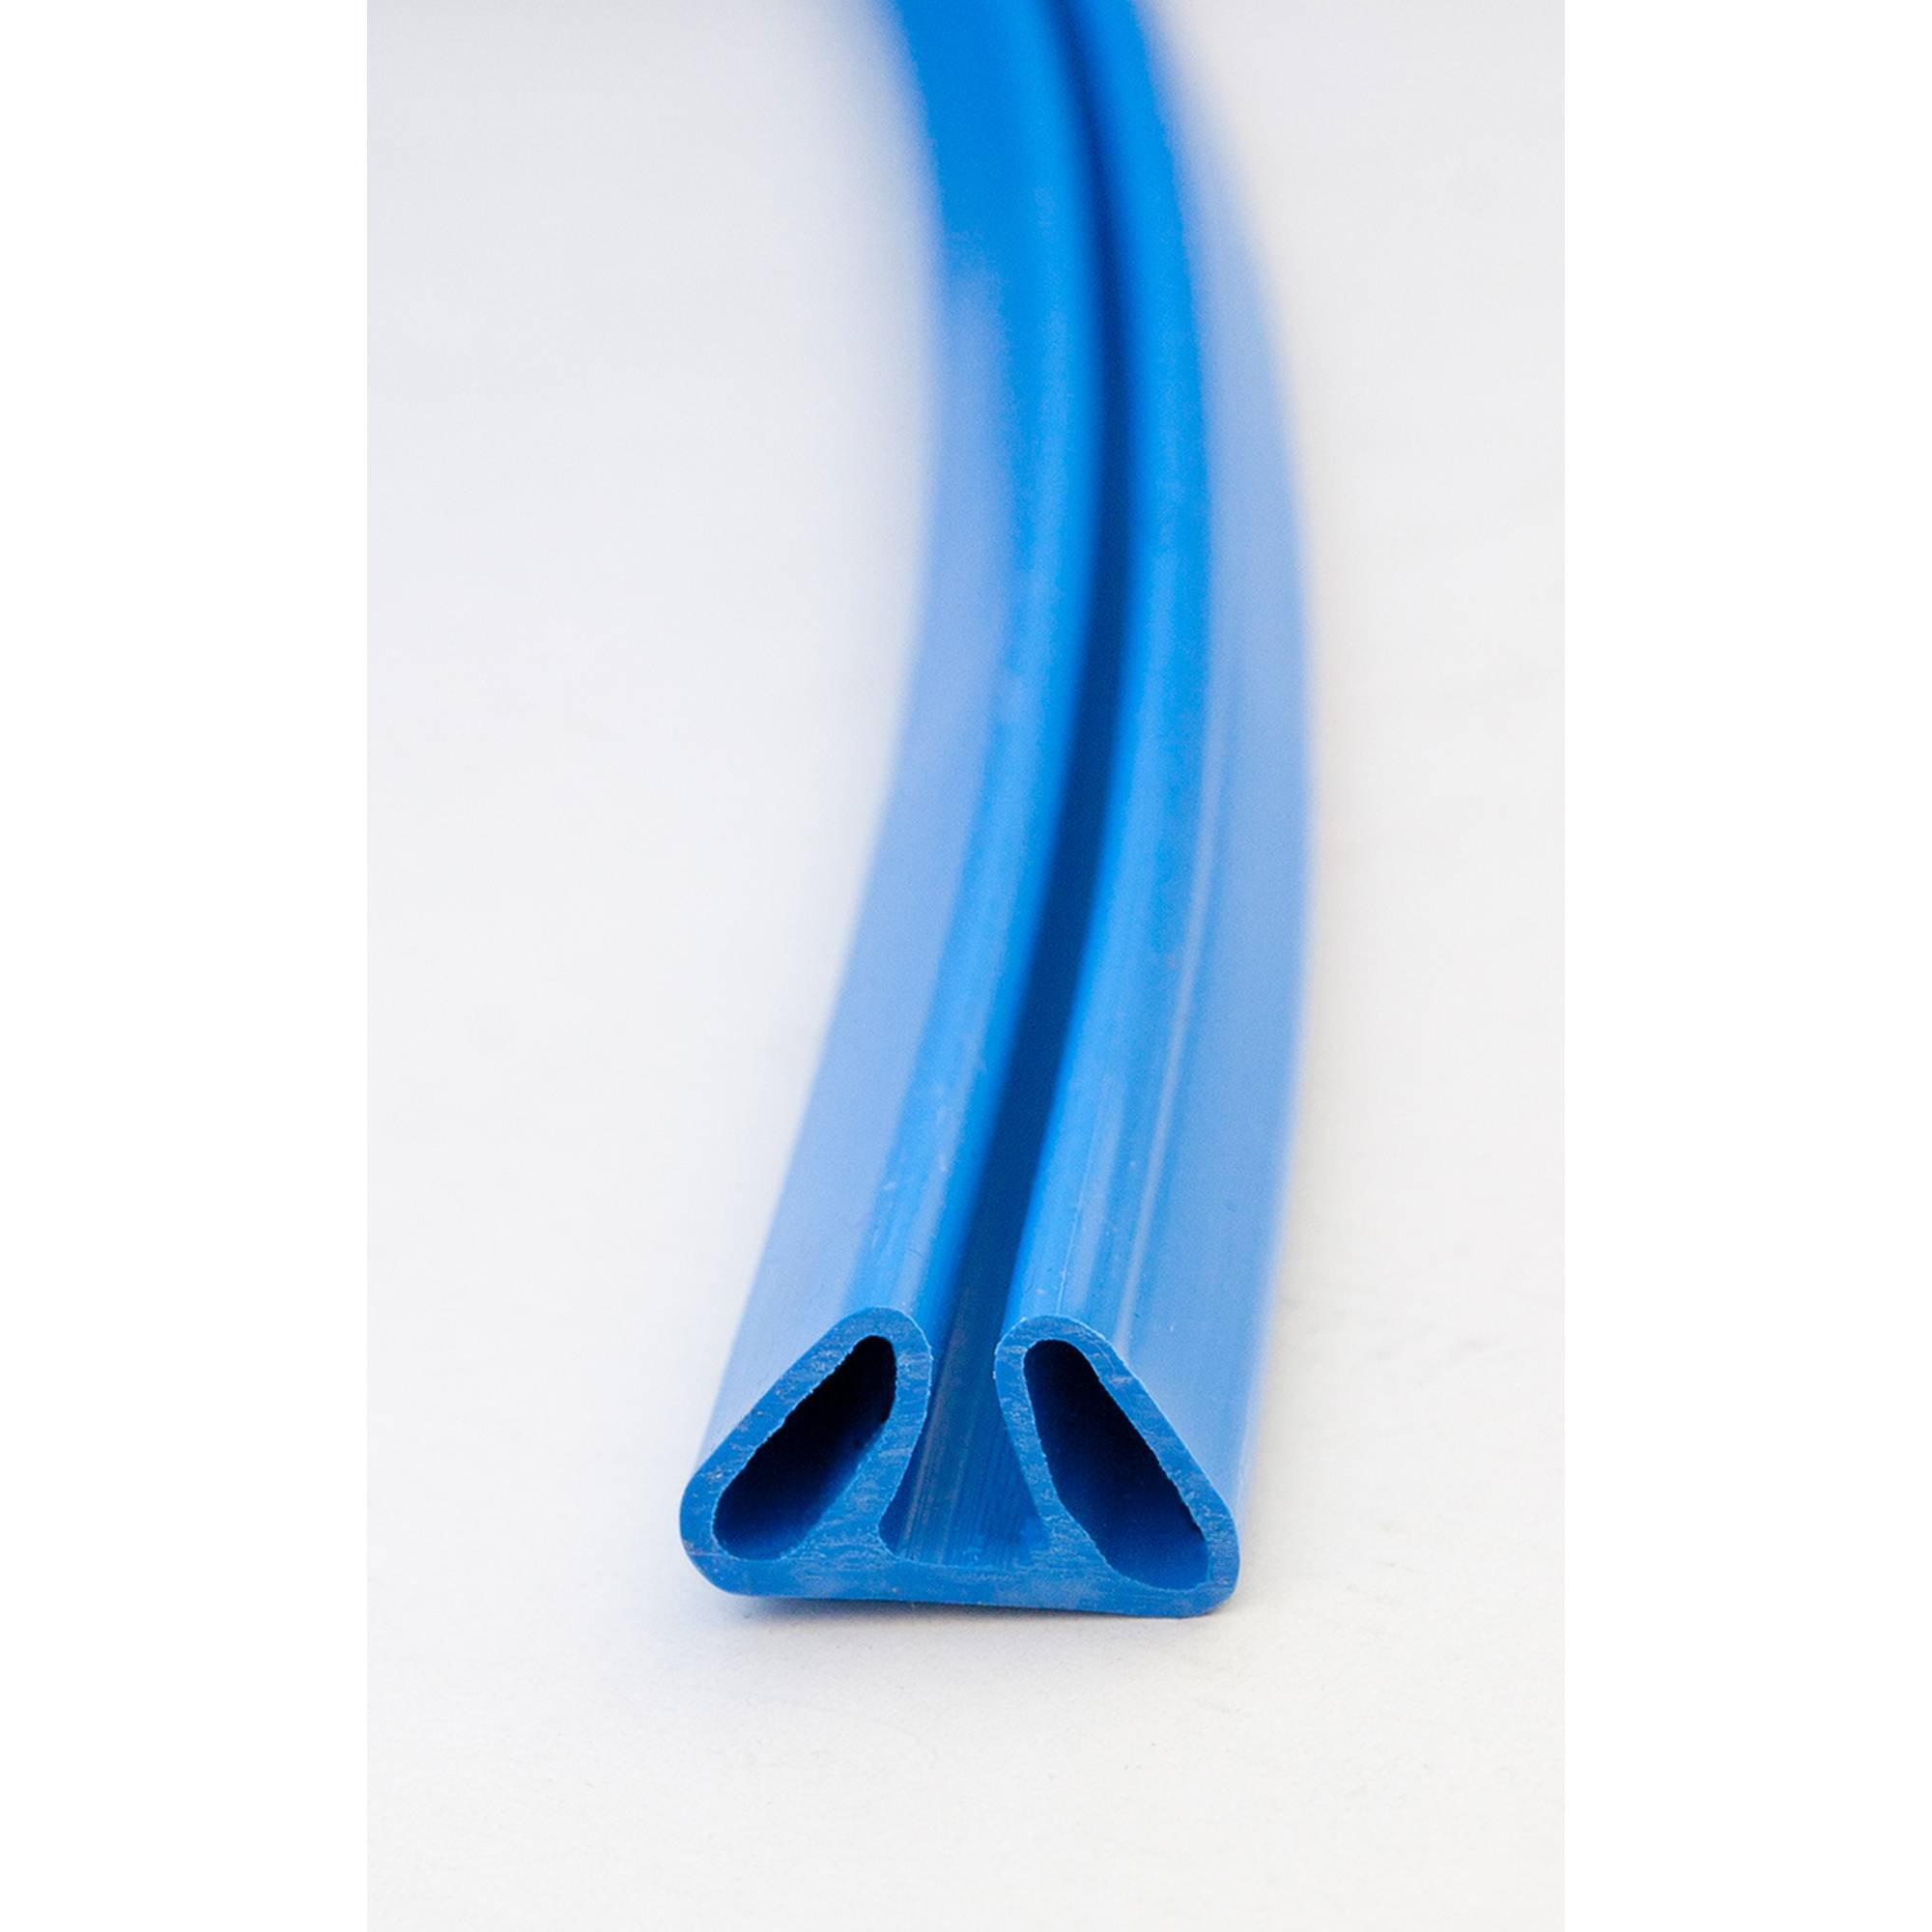 Stahlwandpool rund Exklusiv 400x120 cm, Stahl 0,6 mm weiß, Folie 0,6 mm blau, Einhängebiese